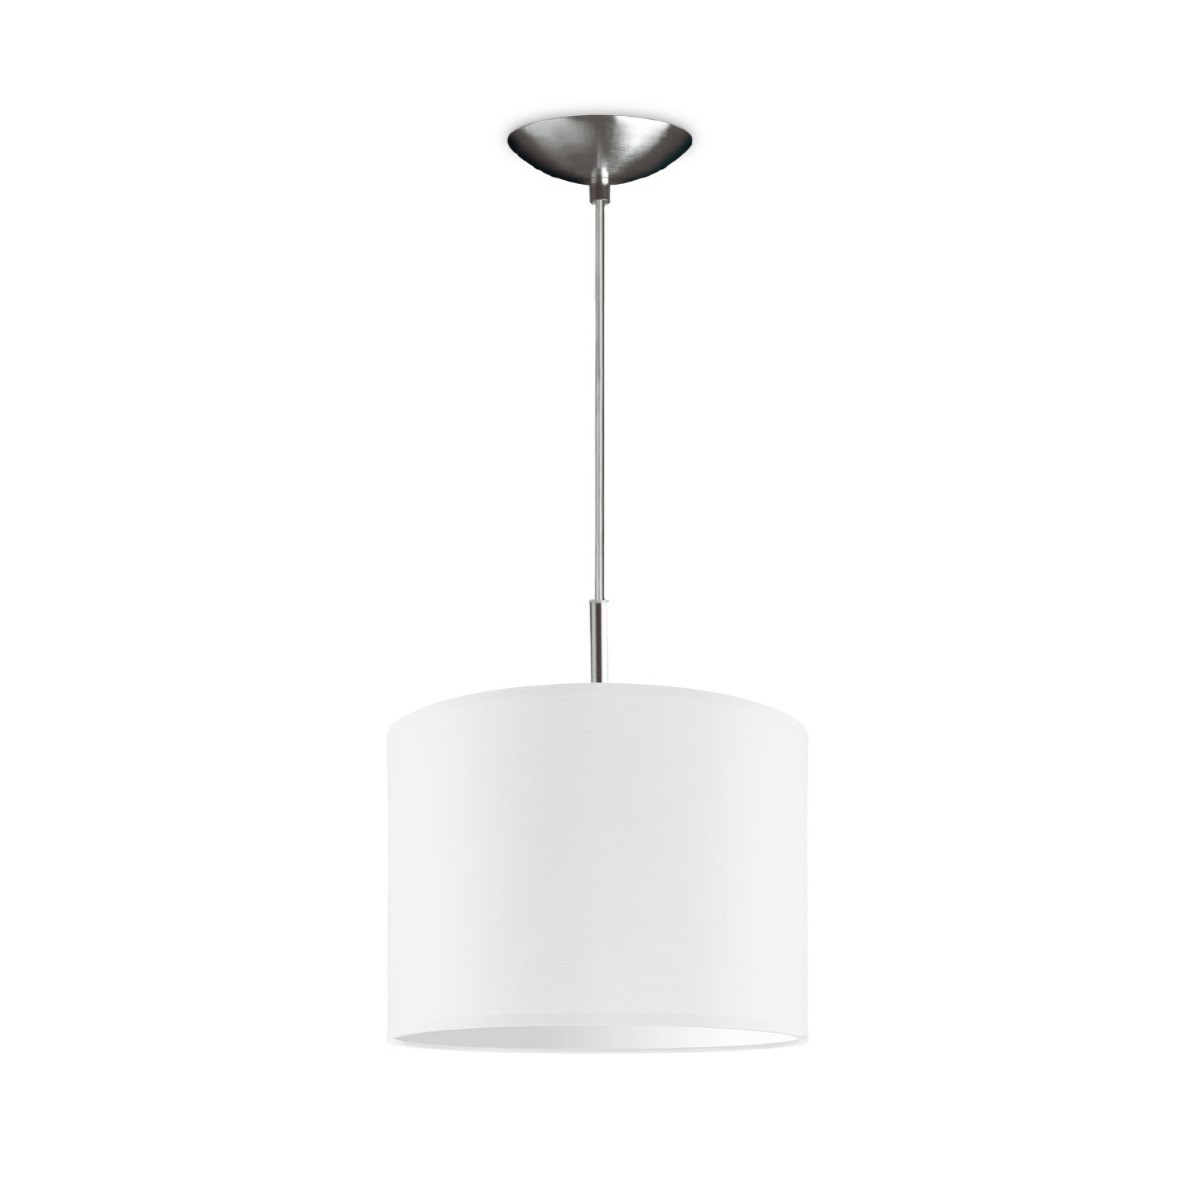 Light depot - hanglamp tube deluxe bling Ø 25 cm - wit - Outlet